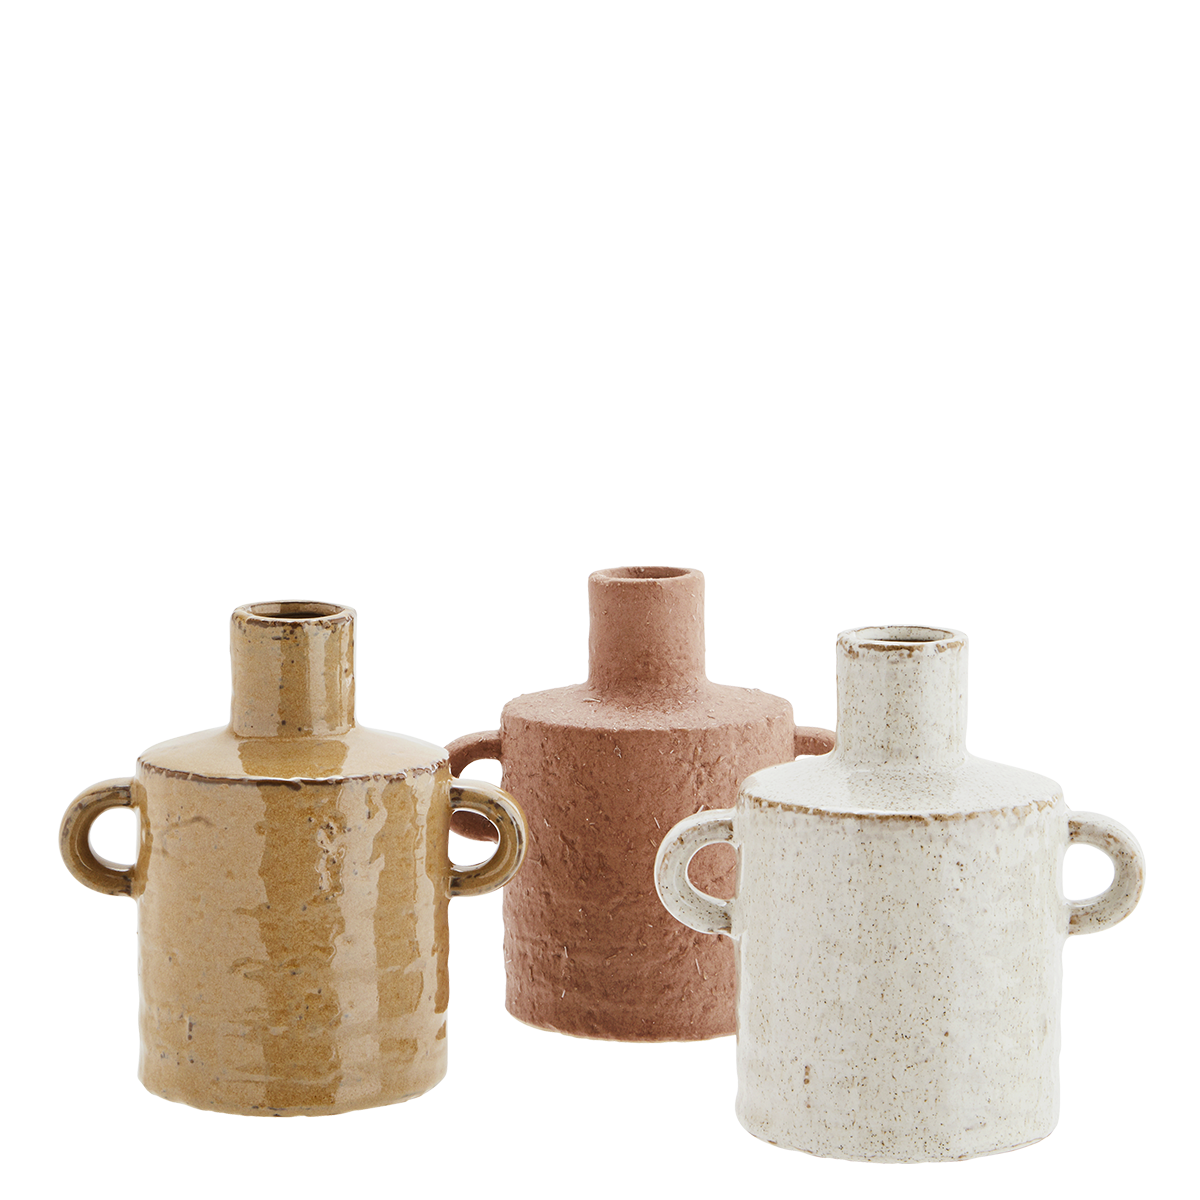 Stoneware vases